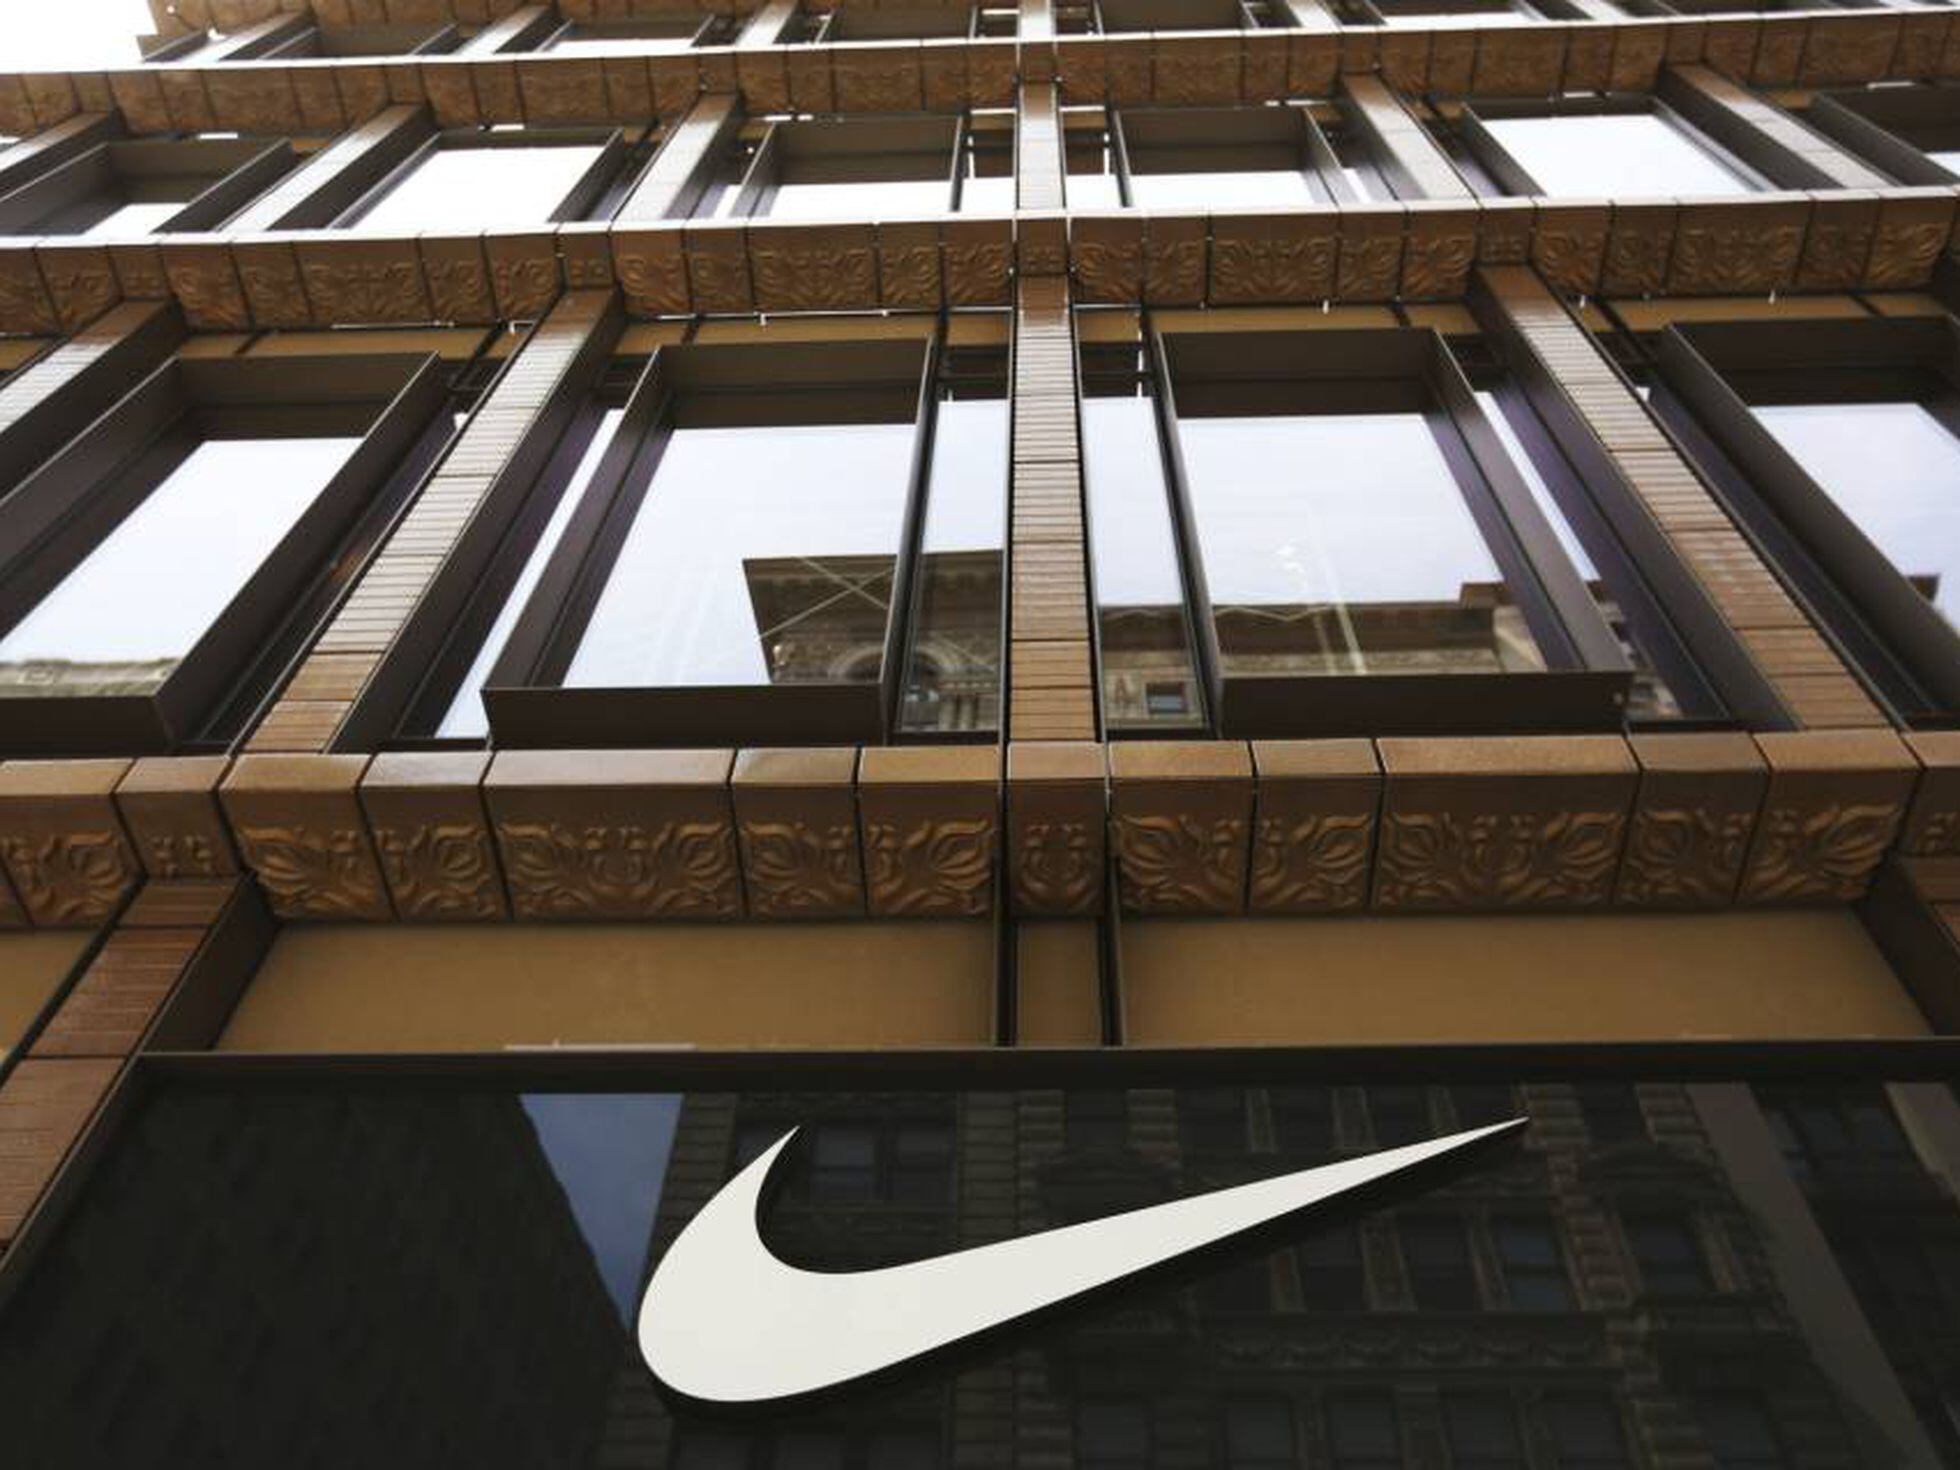 Traición ala Desconocido Nike claudica y venderá directamente sus productos en Amazon | Economía |  EL PAÍS